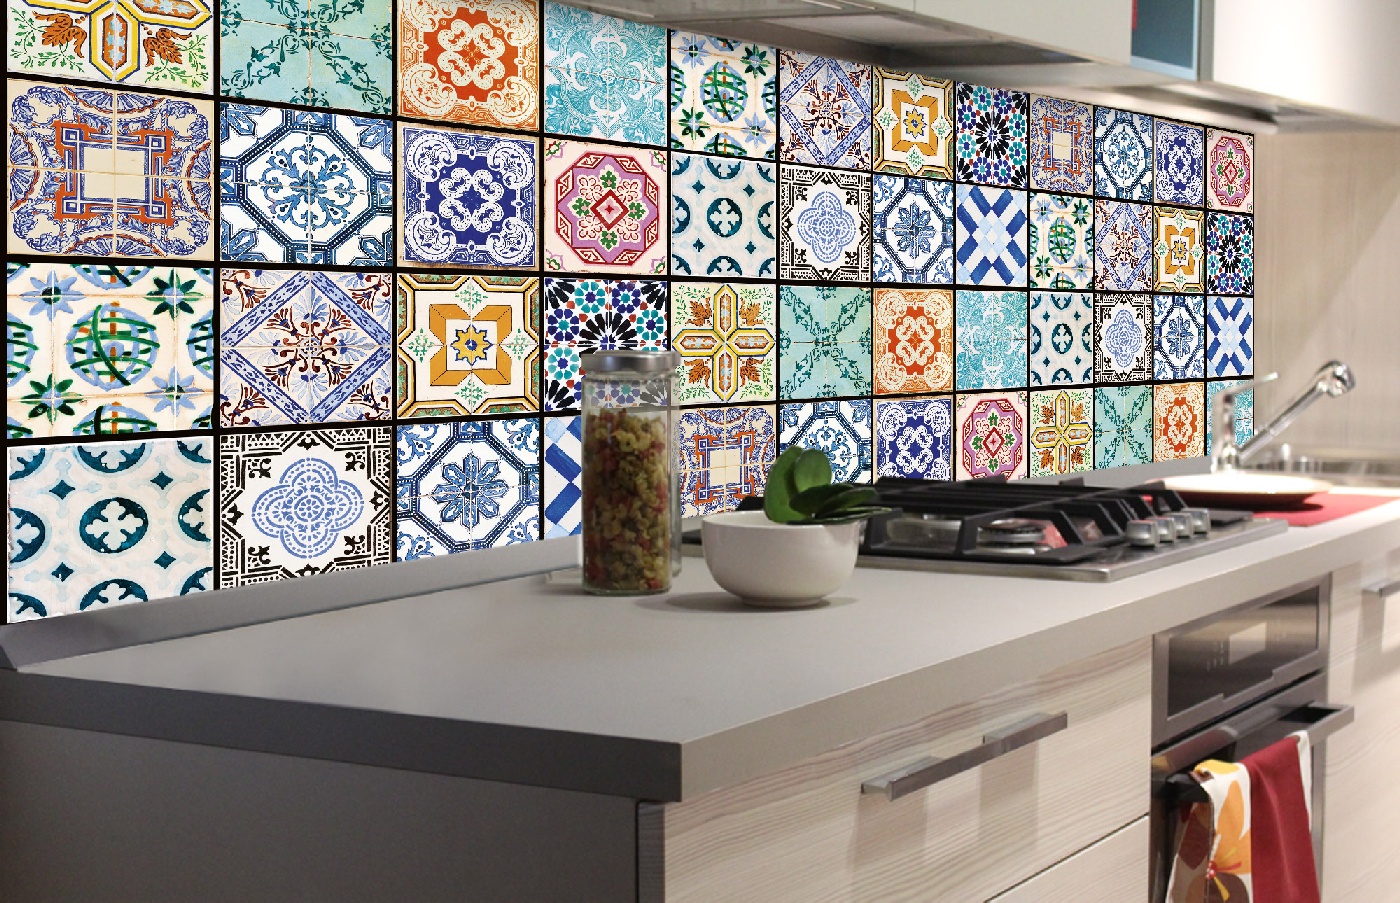 Küchenrückwand Folie - Azulejos 180 x 60 cm